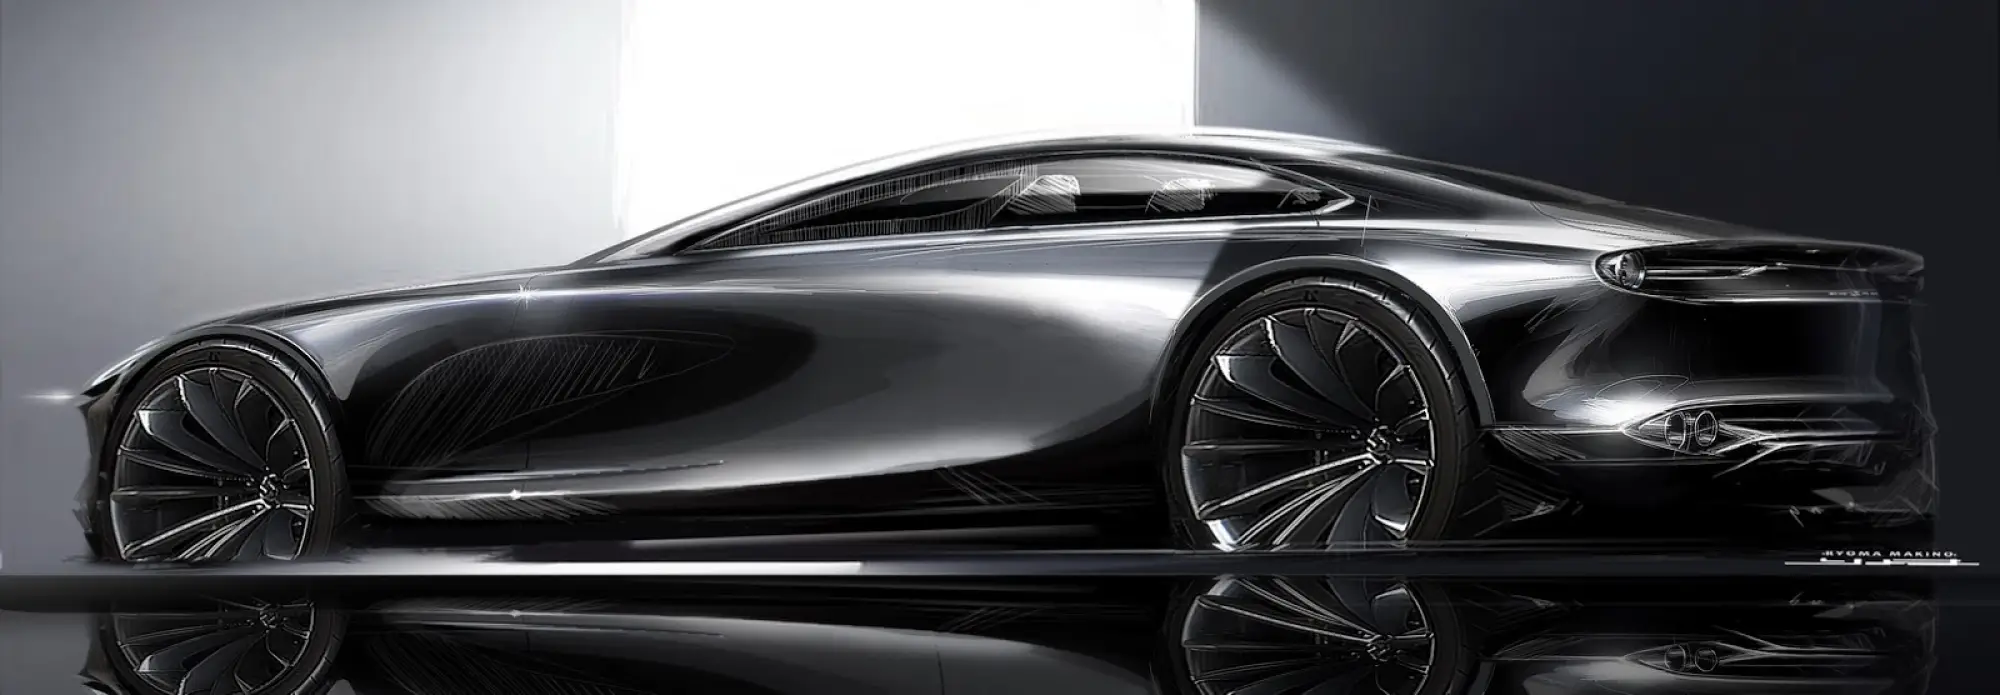 Mazda Vision Coupe Concept - 15